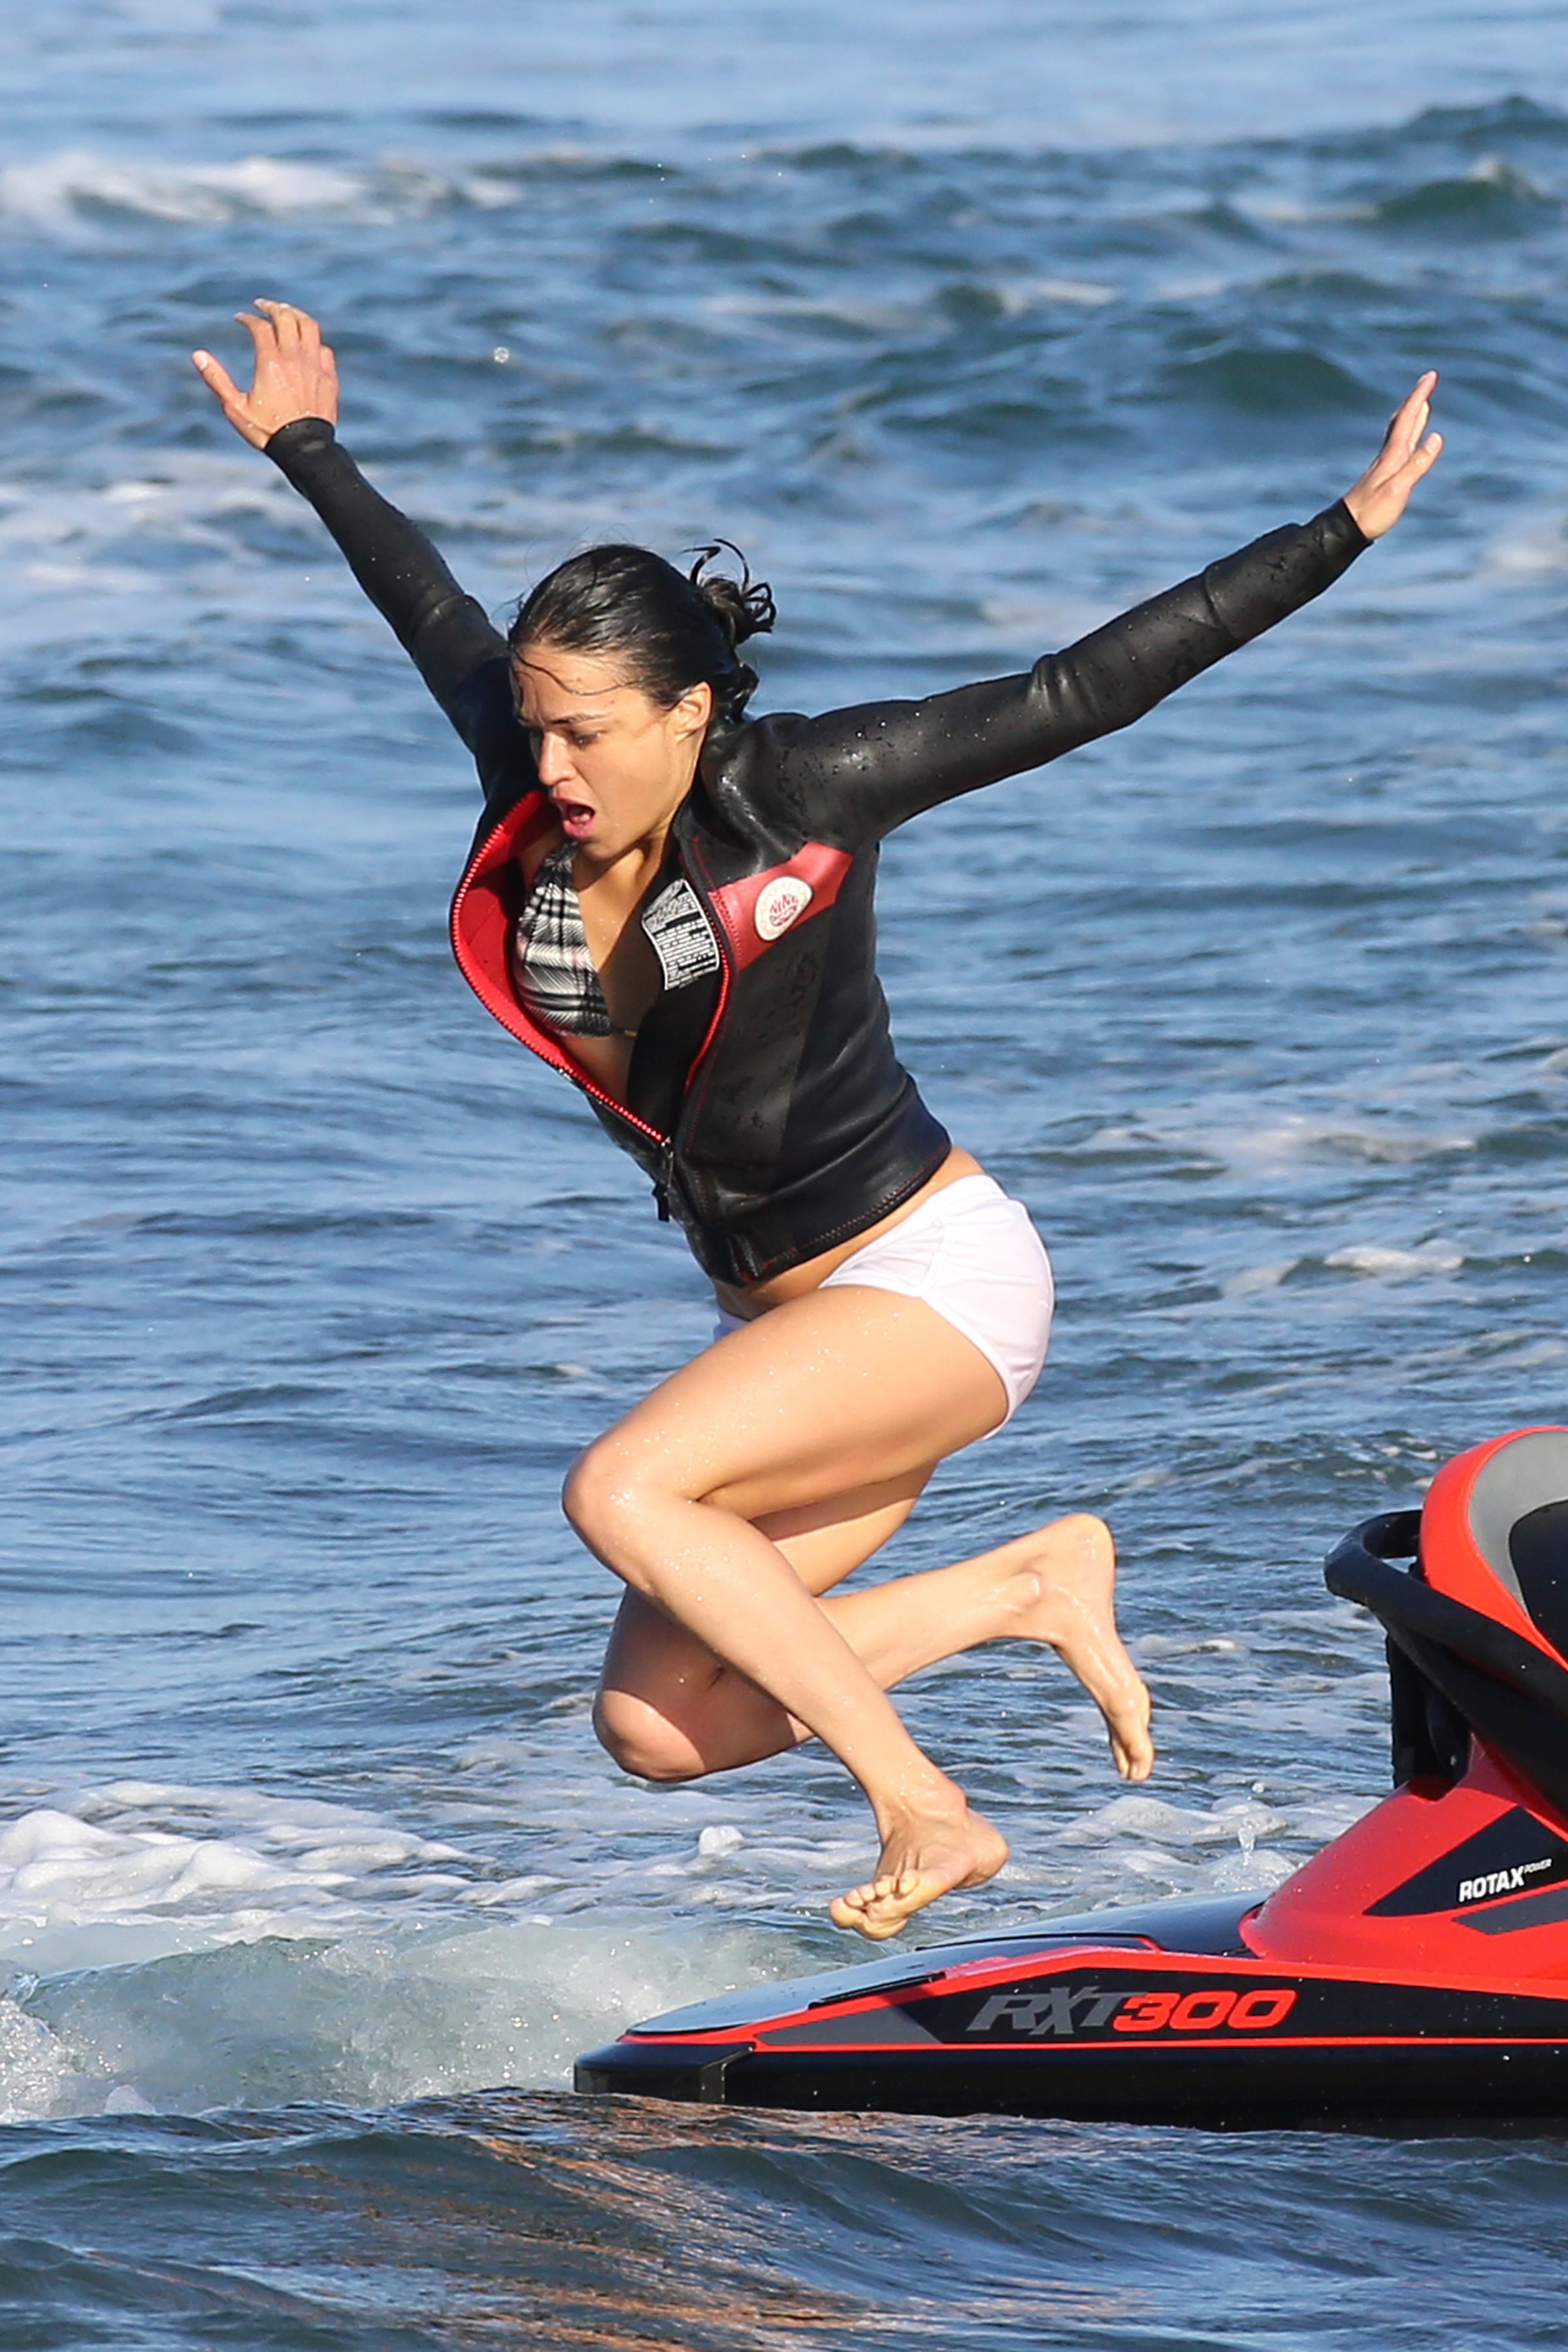 Michelle Rodriguez fappening leak